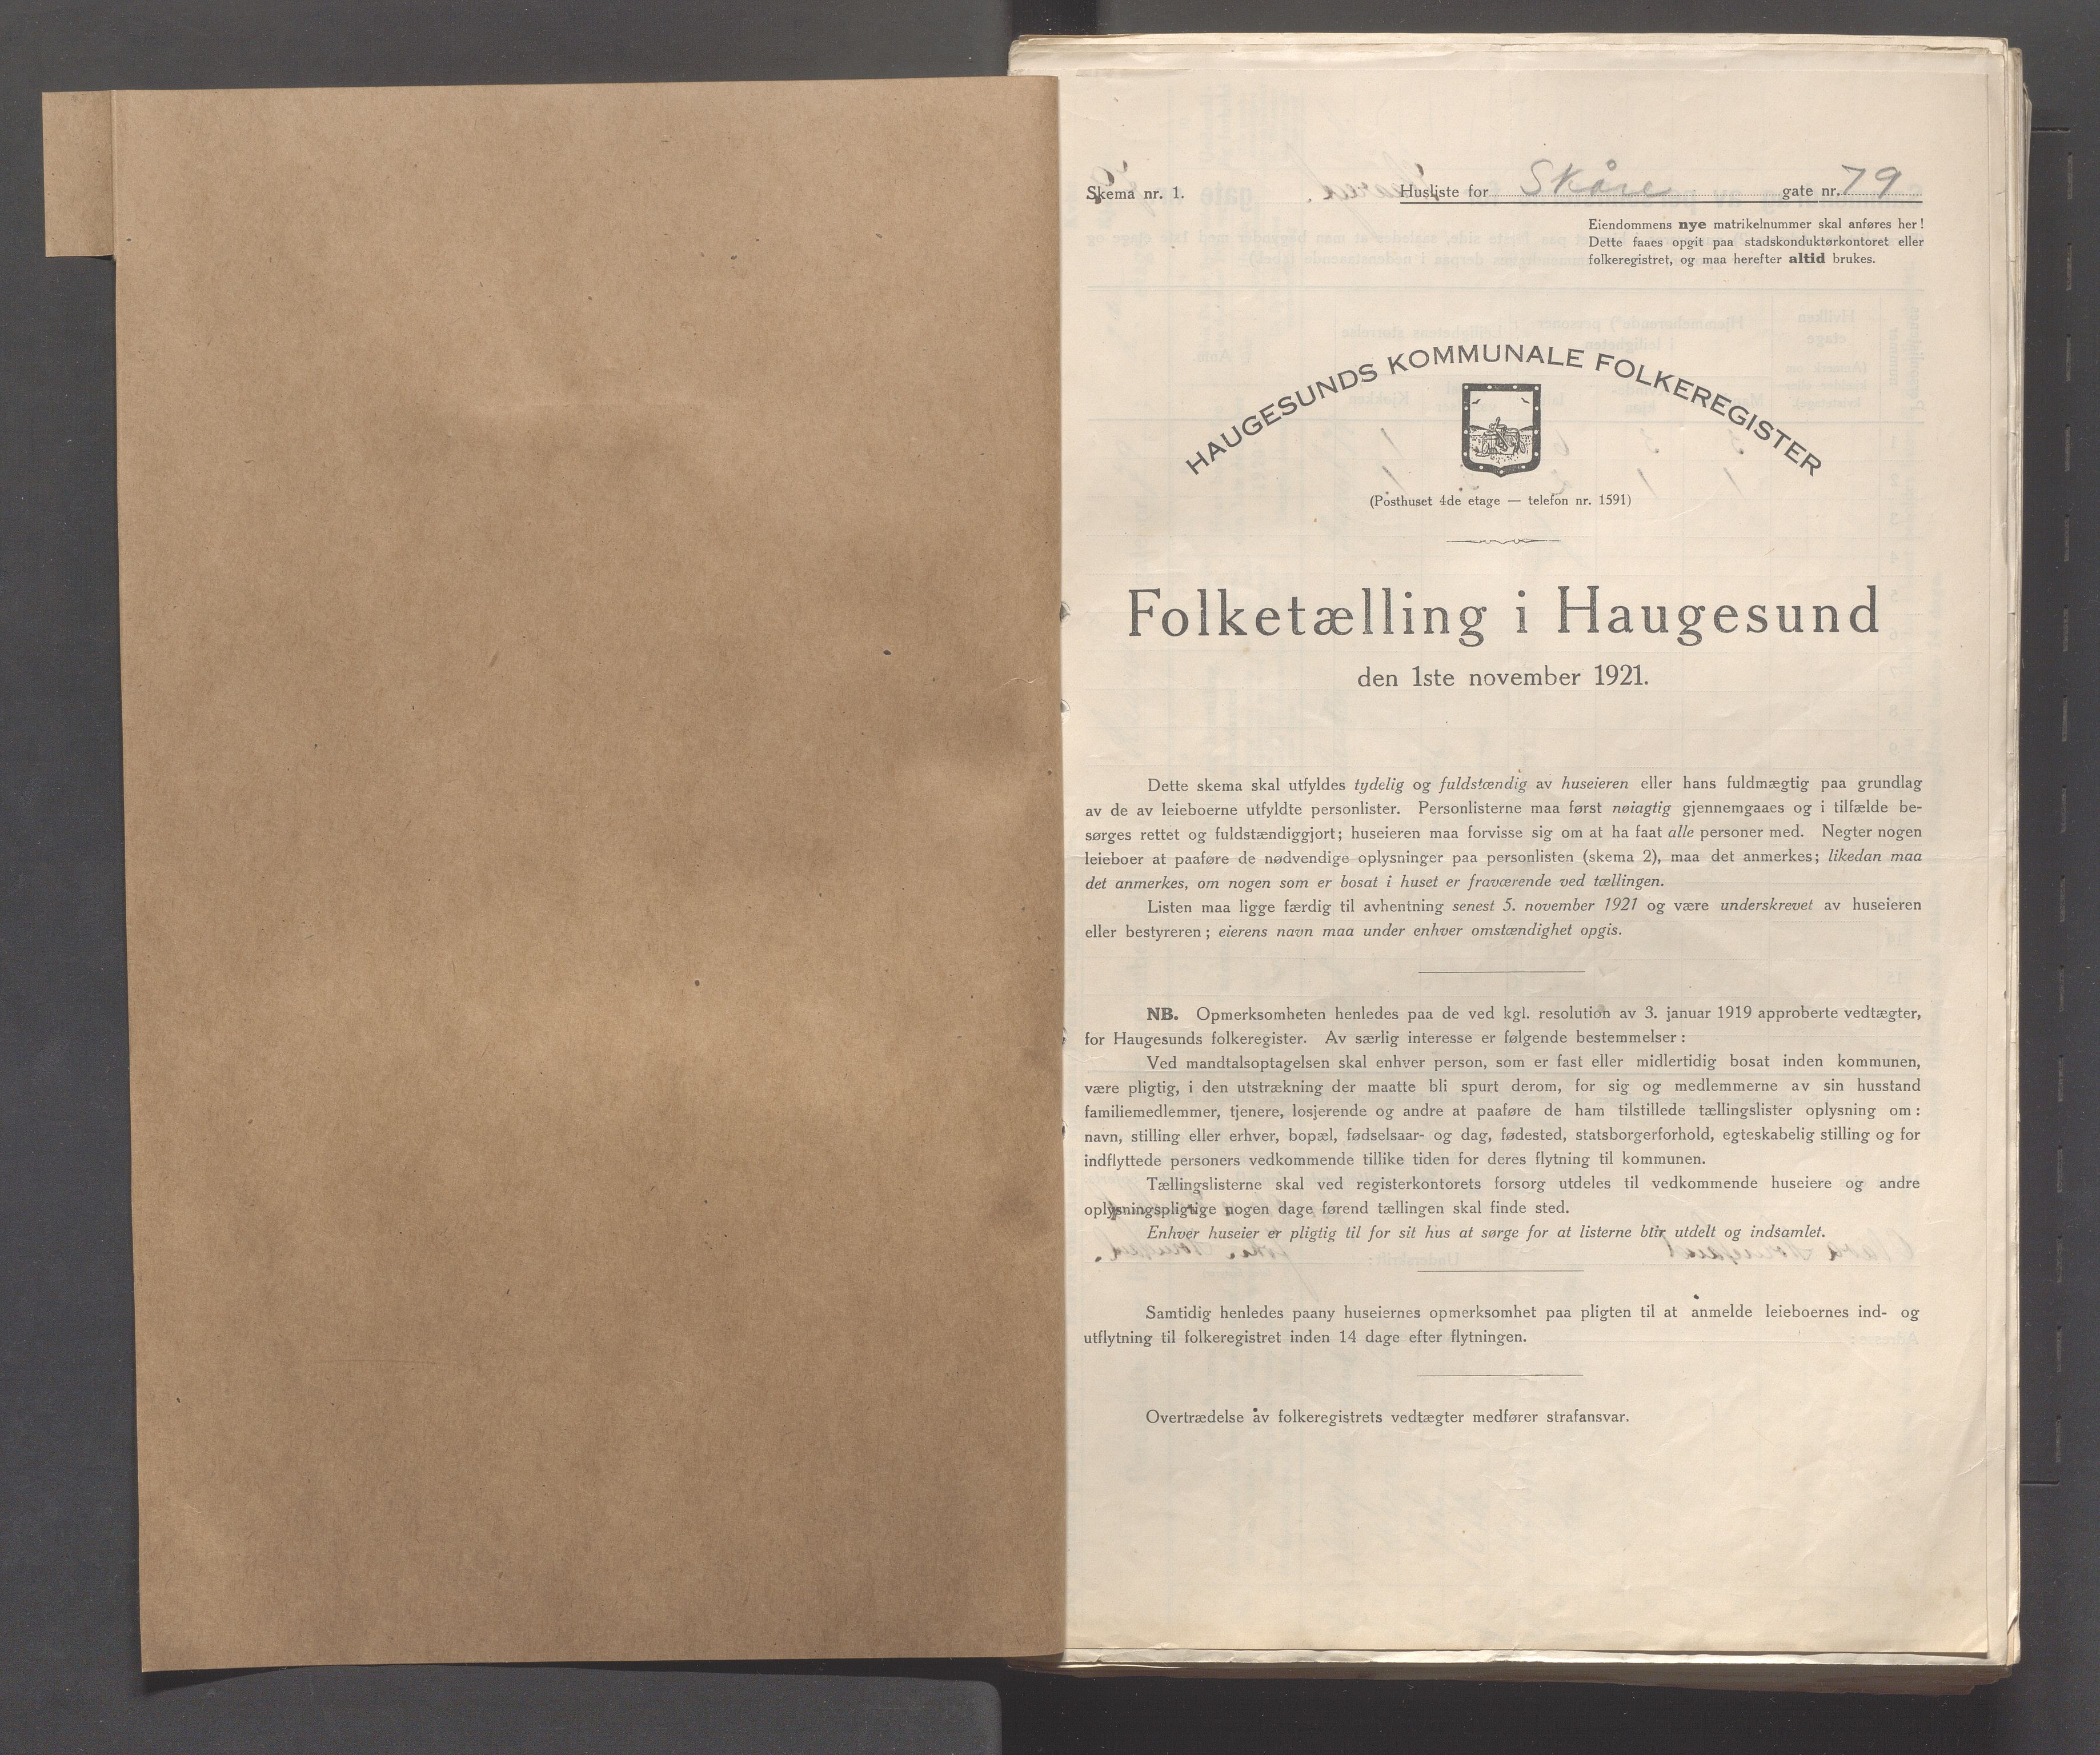 IKAR, Local census 1.11.1921 for Haugesund, 1921, p. 3612